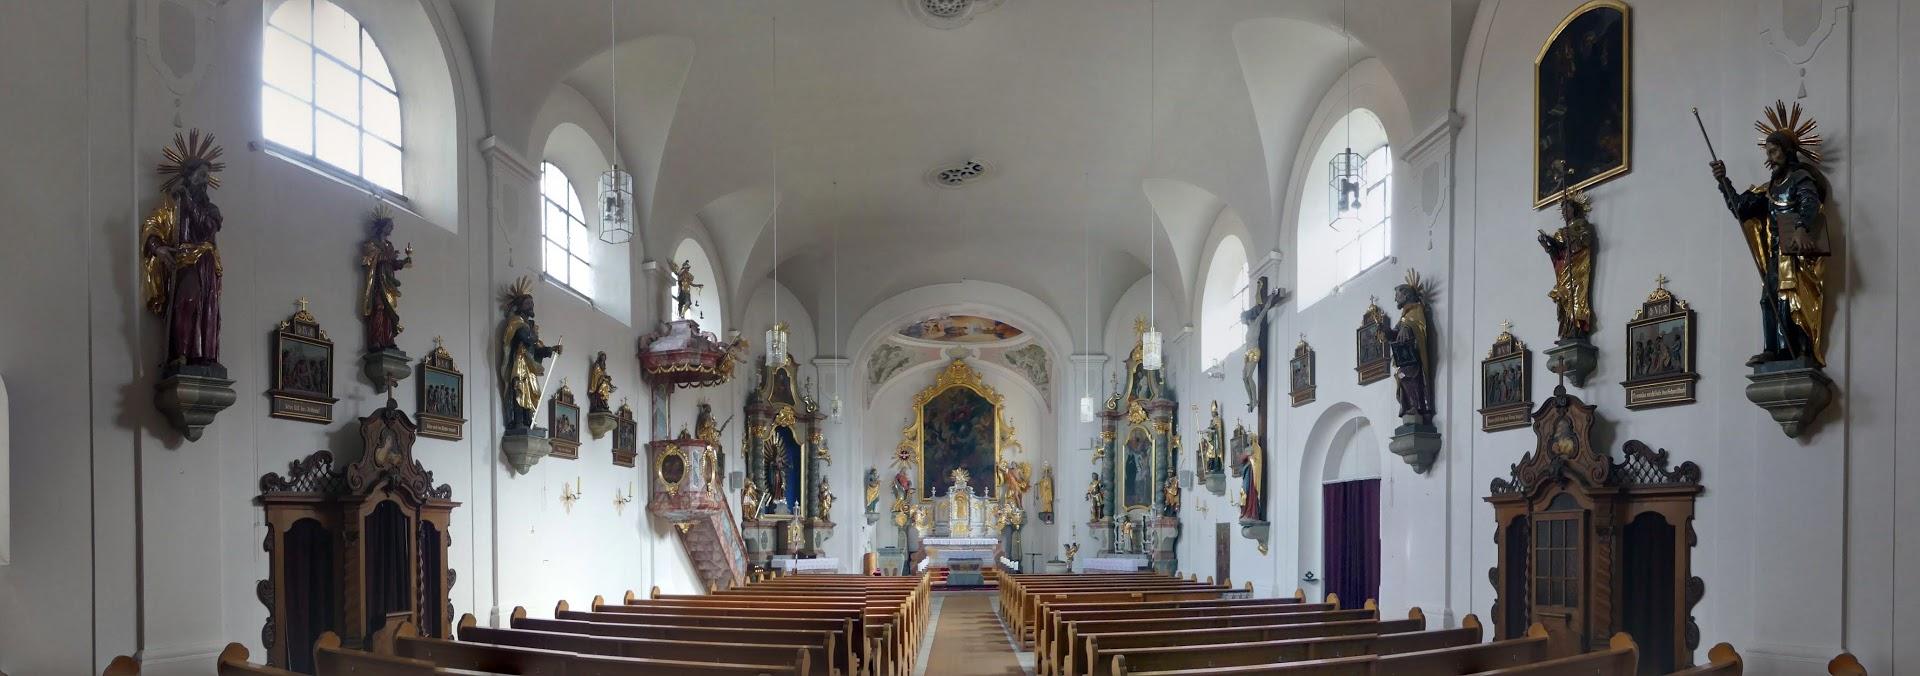 Schönthal (Oberpfalz), ehem. Augustinereremiten-Kloster, Bild 2/4